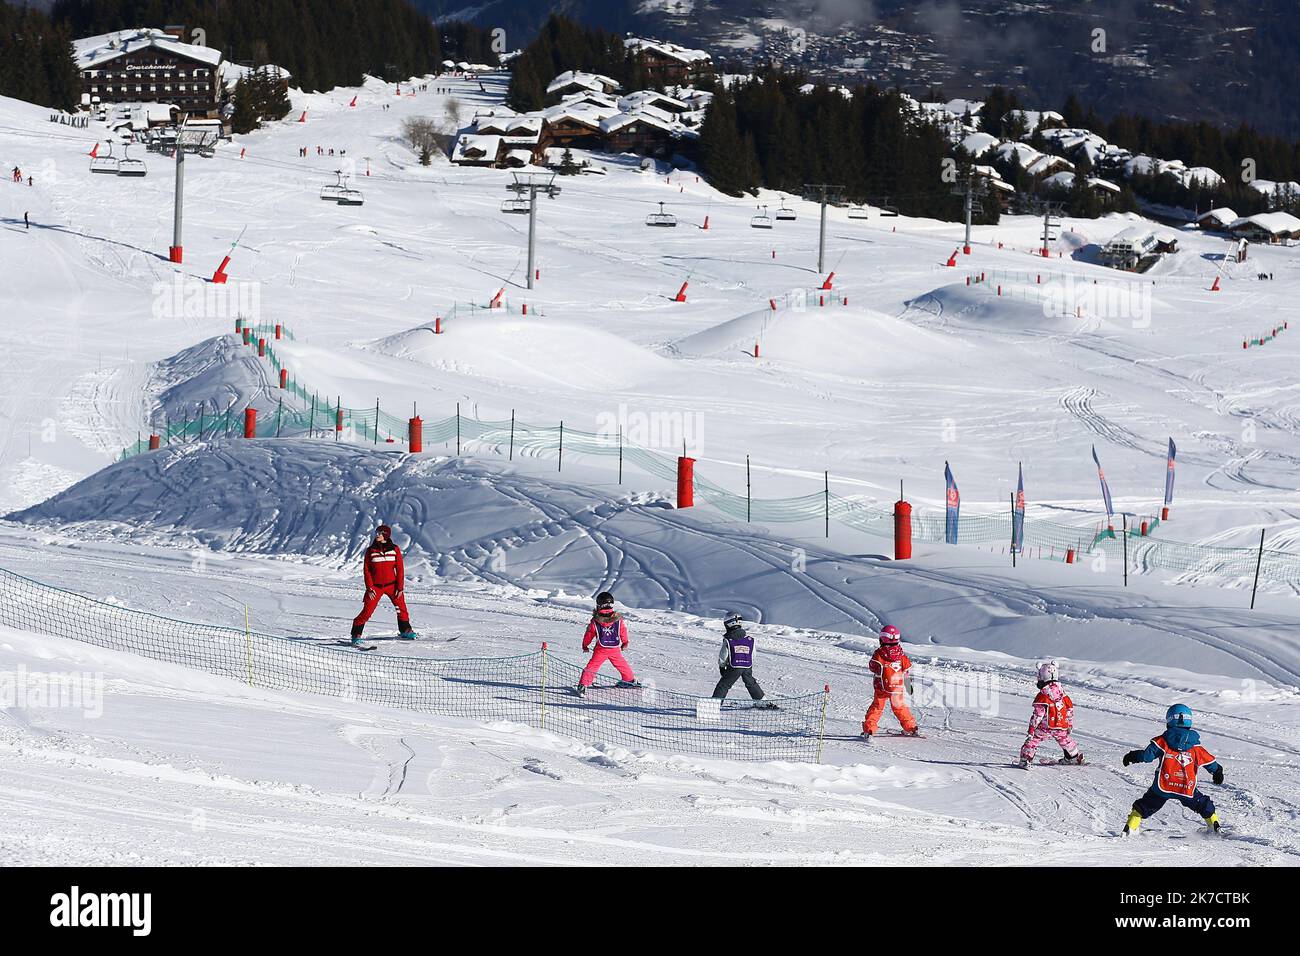 ©PHOTOPQR/VOIX DU NORD/Ludovic Maillard ; 22/02/2021 ; Courchevel le 17.02.2021, Courchevel est une station de sports d hiver de la vallee de la Tarentaise situee dans la commune de Courchevel, dans le departement de la Savoie, sans remontees mecaniques , courchevel s adapte, ski de fond, raquettes, luges chiens de traineaux etc . LA VOIX DU NORD / PHOTO LUDOVIC MAILLARD - Courcheve French Alps ski resort. It is a part of Les Trois Vallées, the largest linked ski areas in the world. There is no shortage of activities in the resort even in times of Covid  Stock Photo